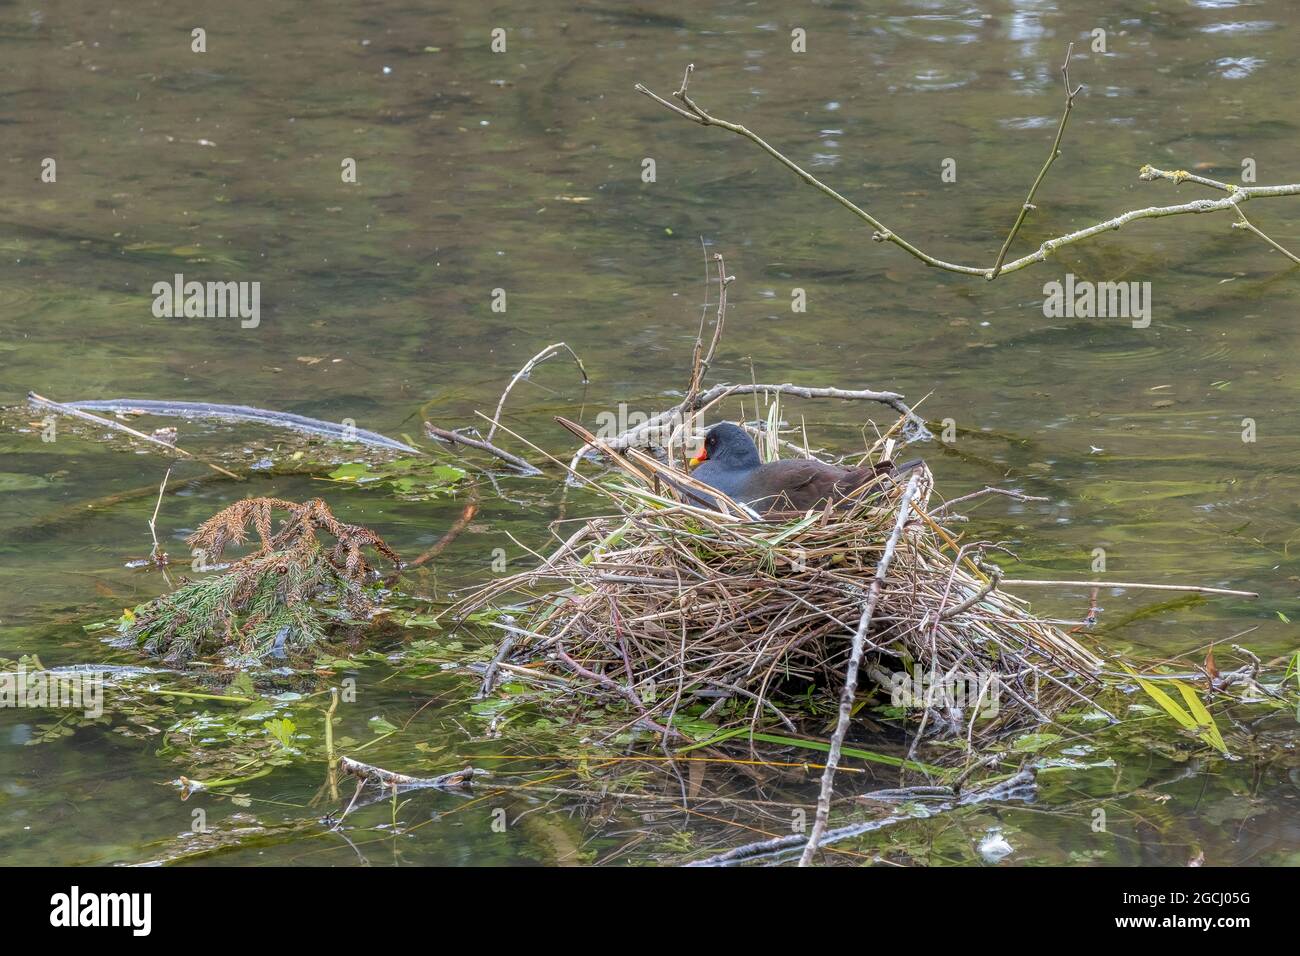 Ein Moorhen - Gallinula - auf einem Nest in einem kleinen See. Stockfoto